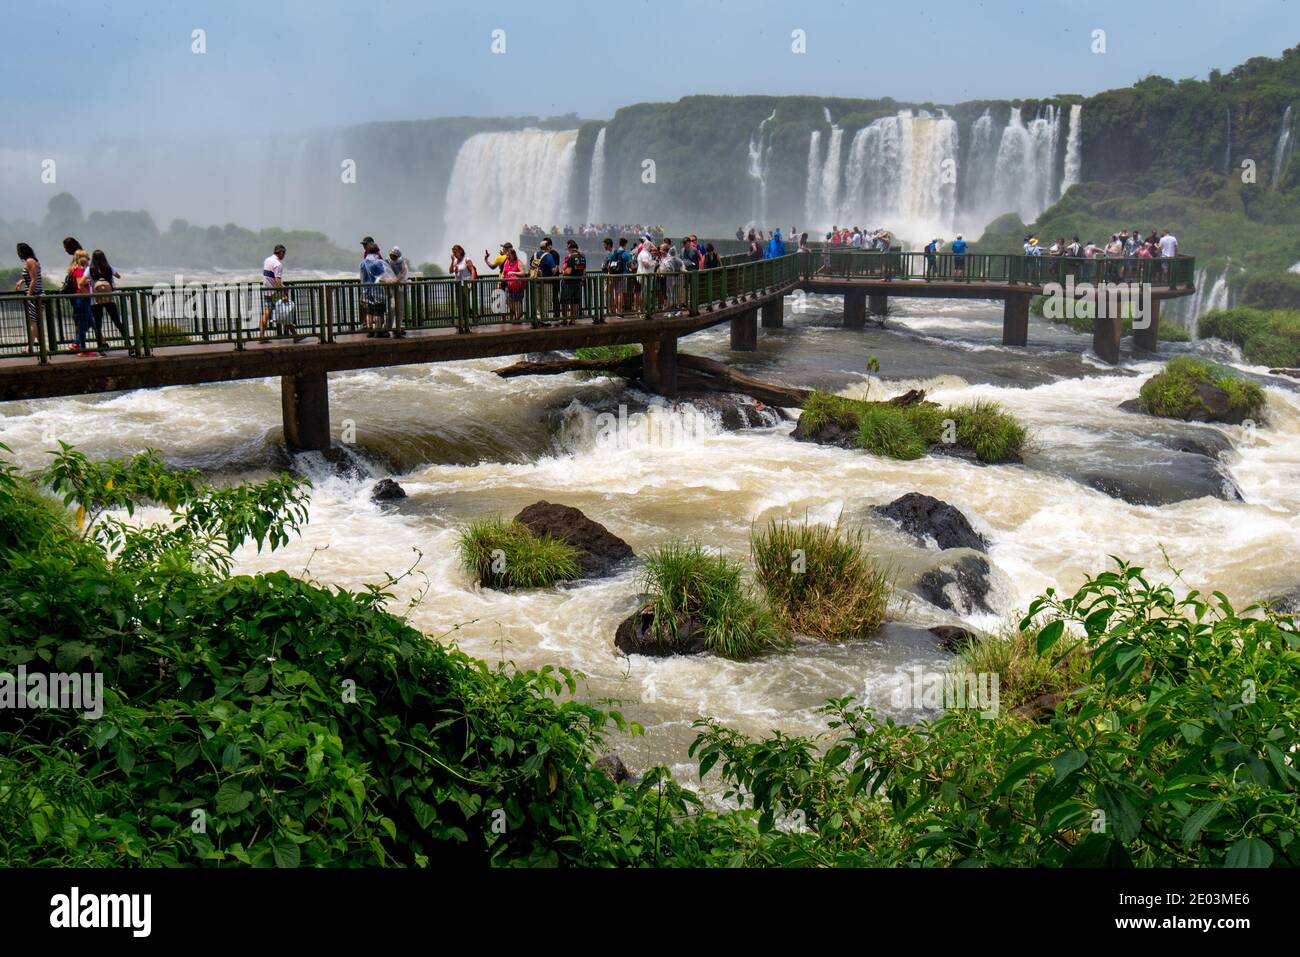 Foz do Iguacu, Parana, Brasilien - 27. November 2018: Touristen bewundern eines der neuen Sieben Wunder der Natur - die Iguazu Wasserfälle, an der Grenze zu Brasilien und Stockfoto